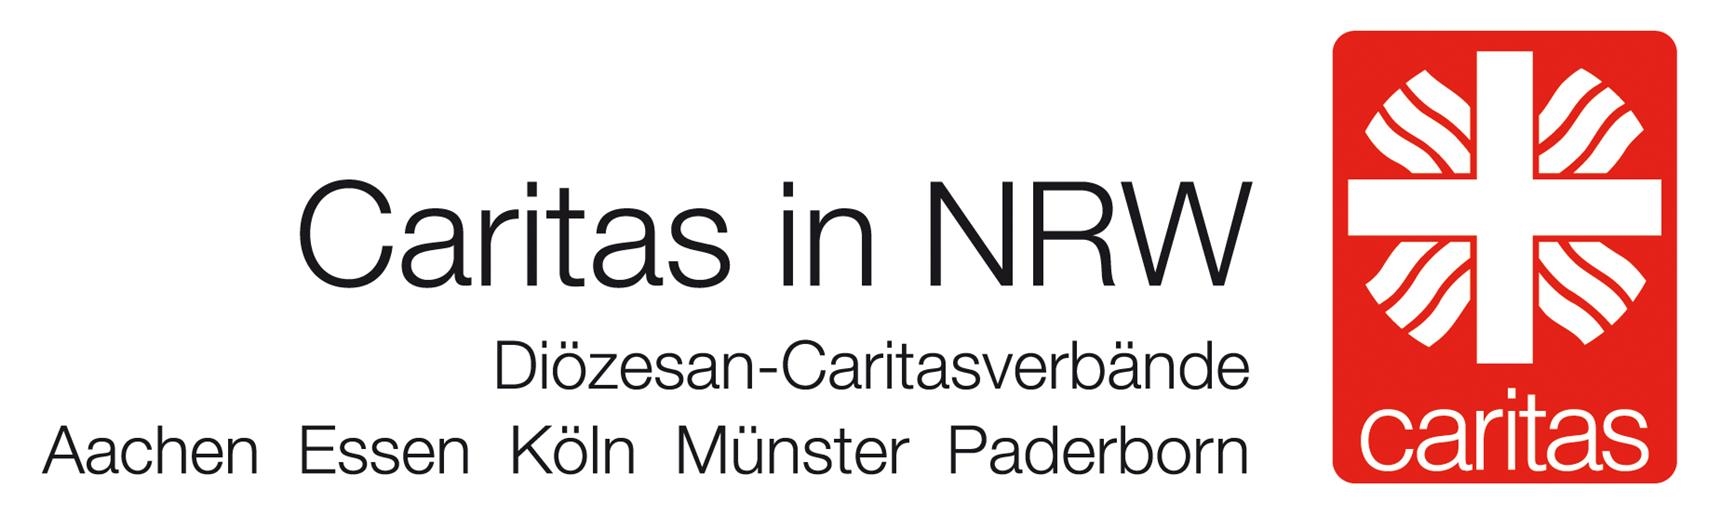 Caritas in NRW